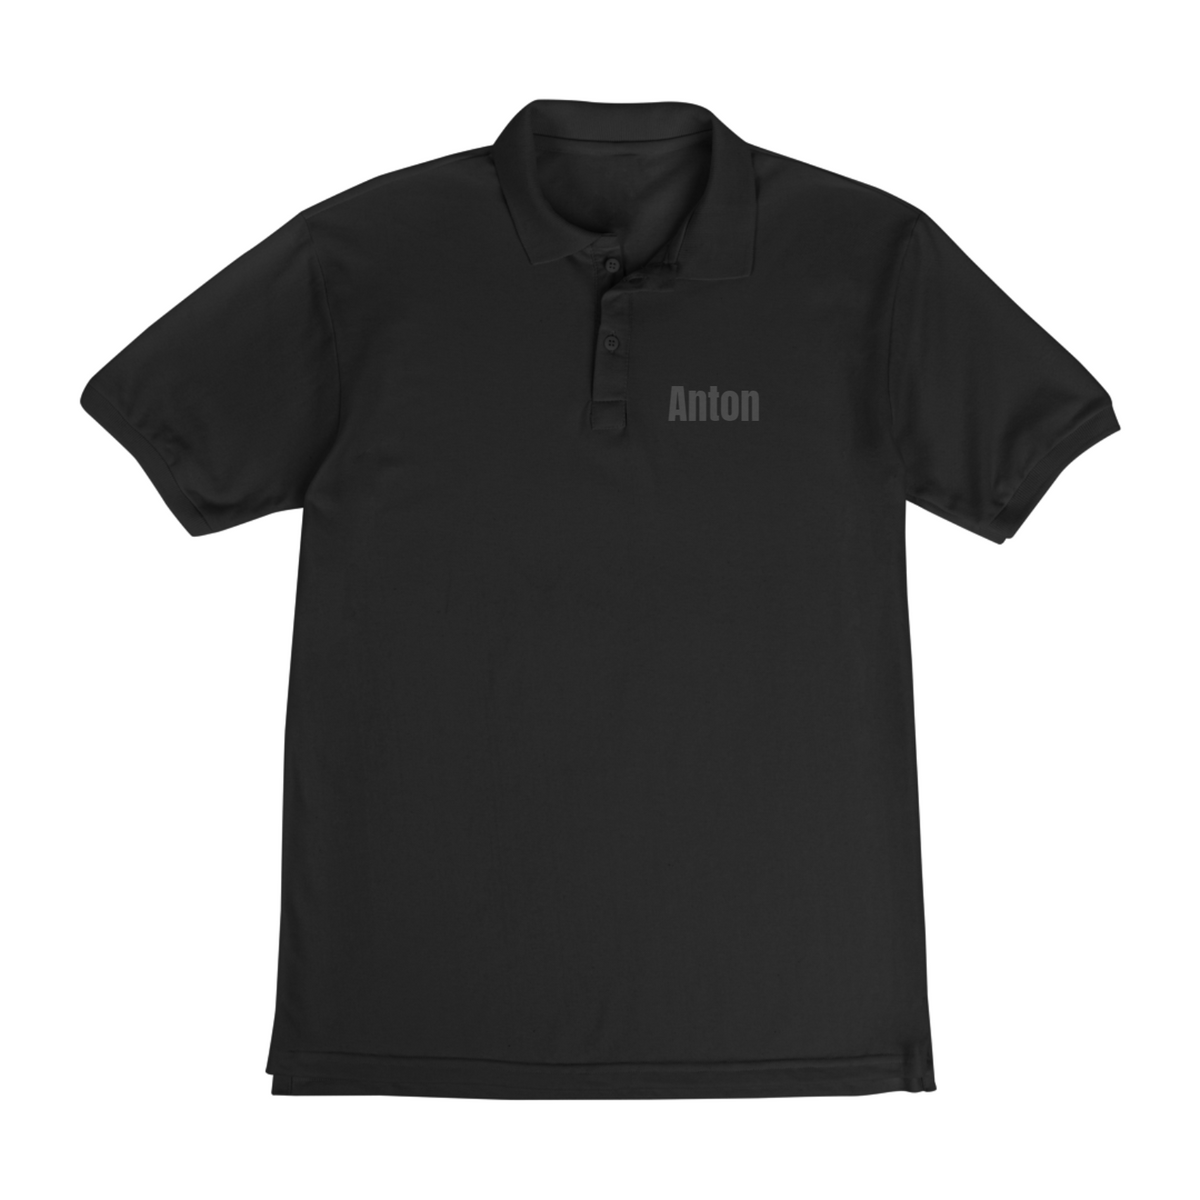 Nome do produto: Camisa polo Anton.